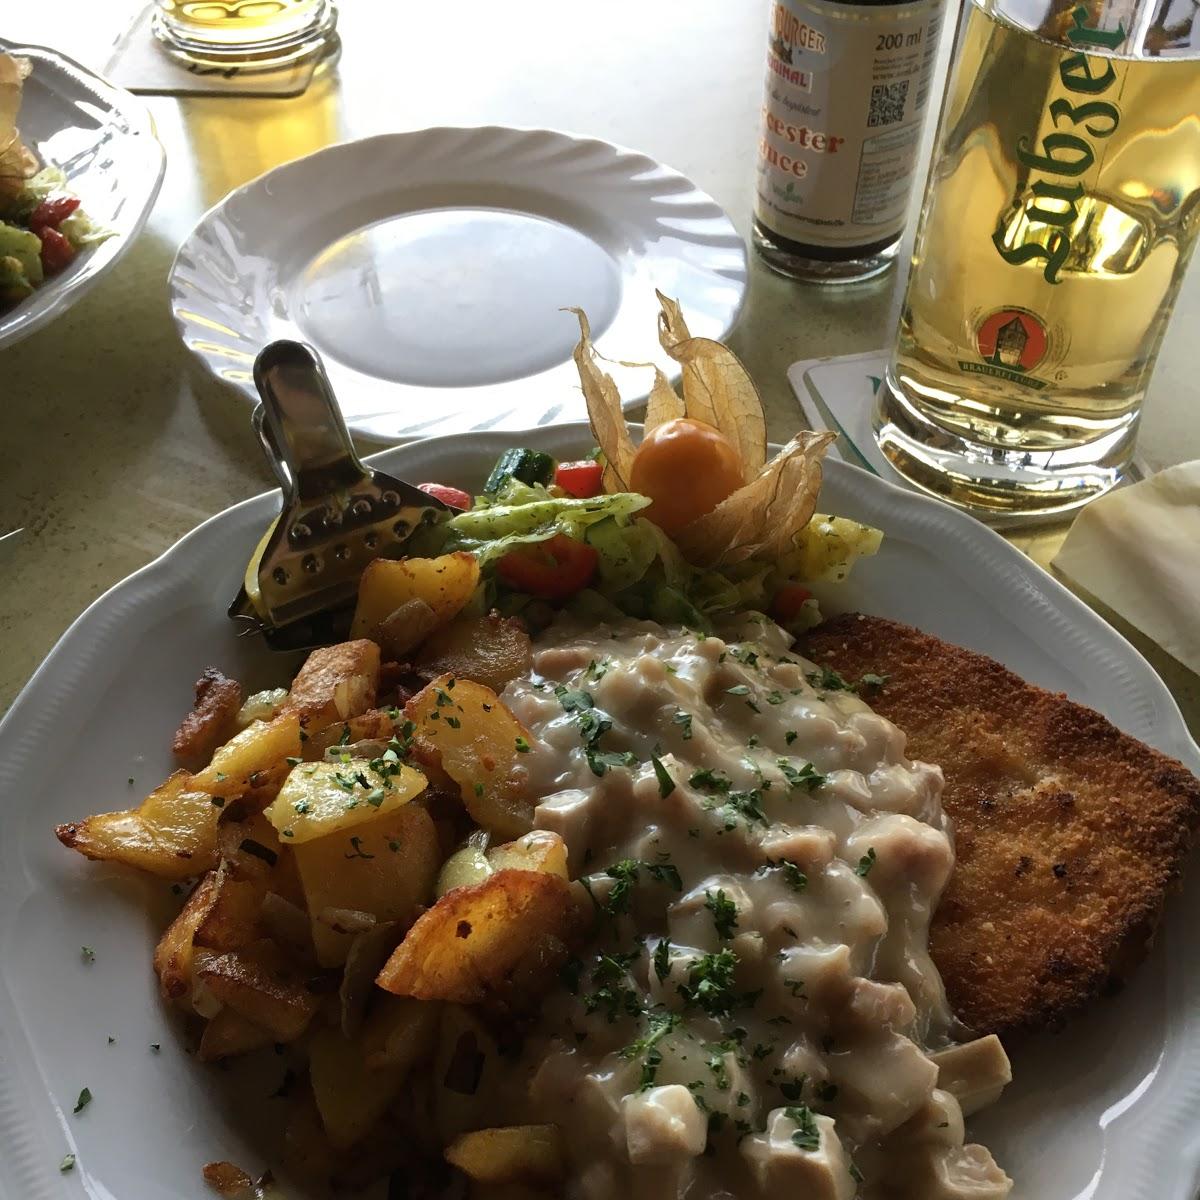 Restaurant "Gaststätte Die Aula" in Lübz